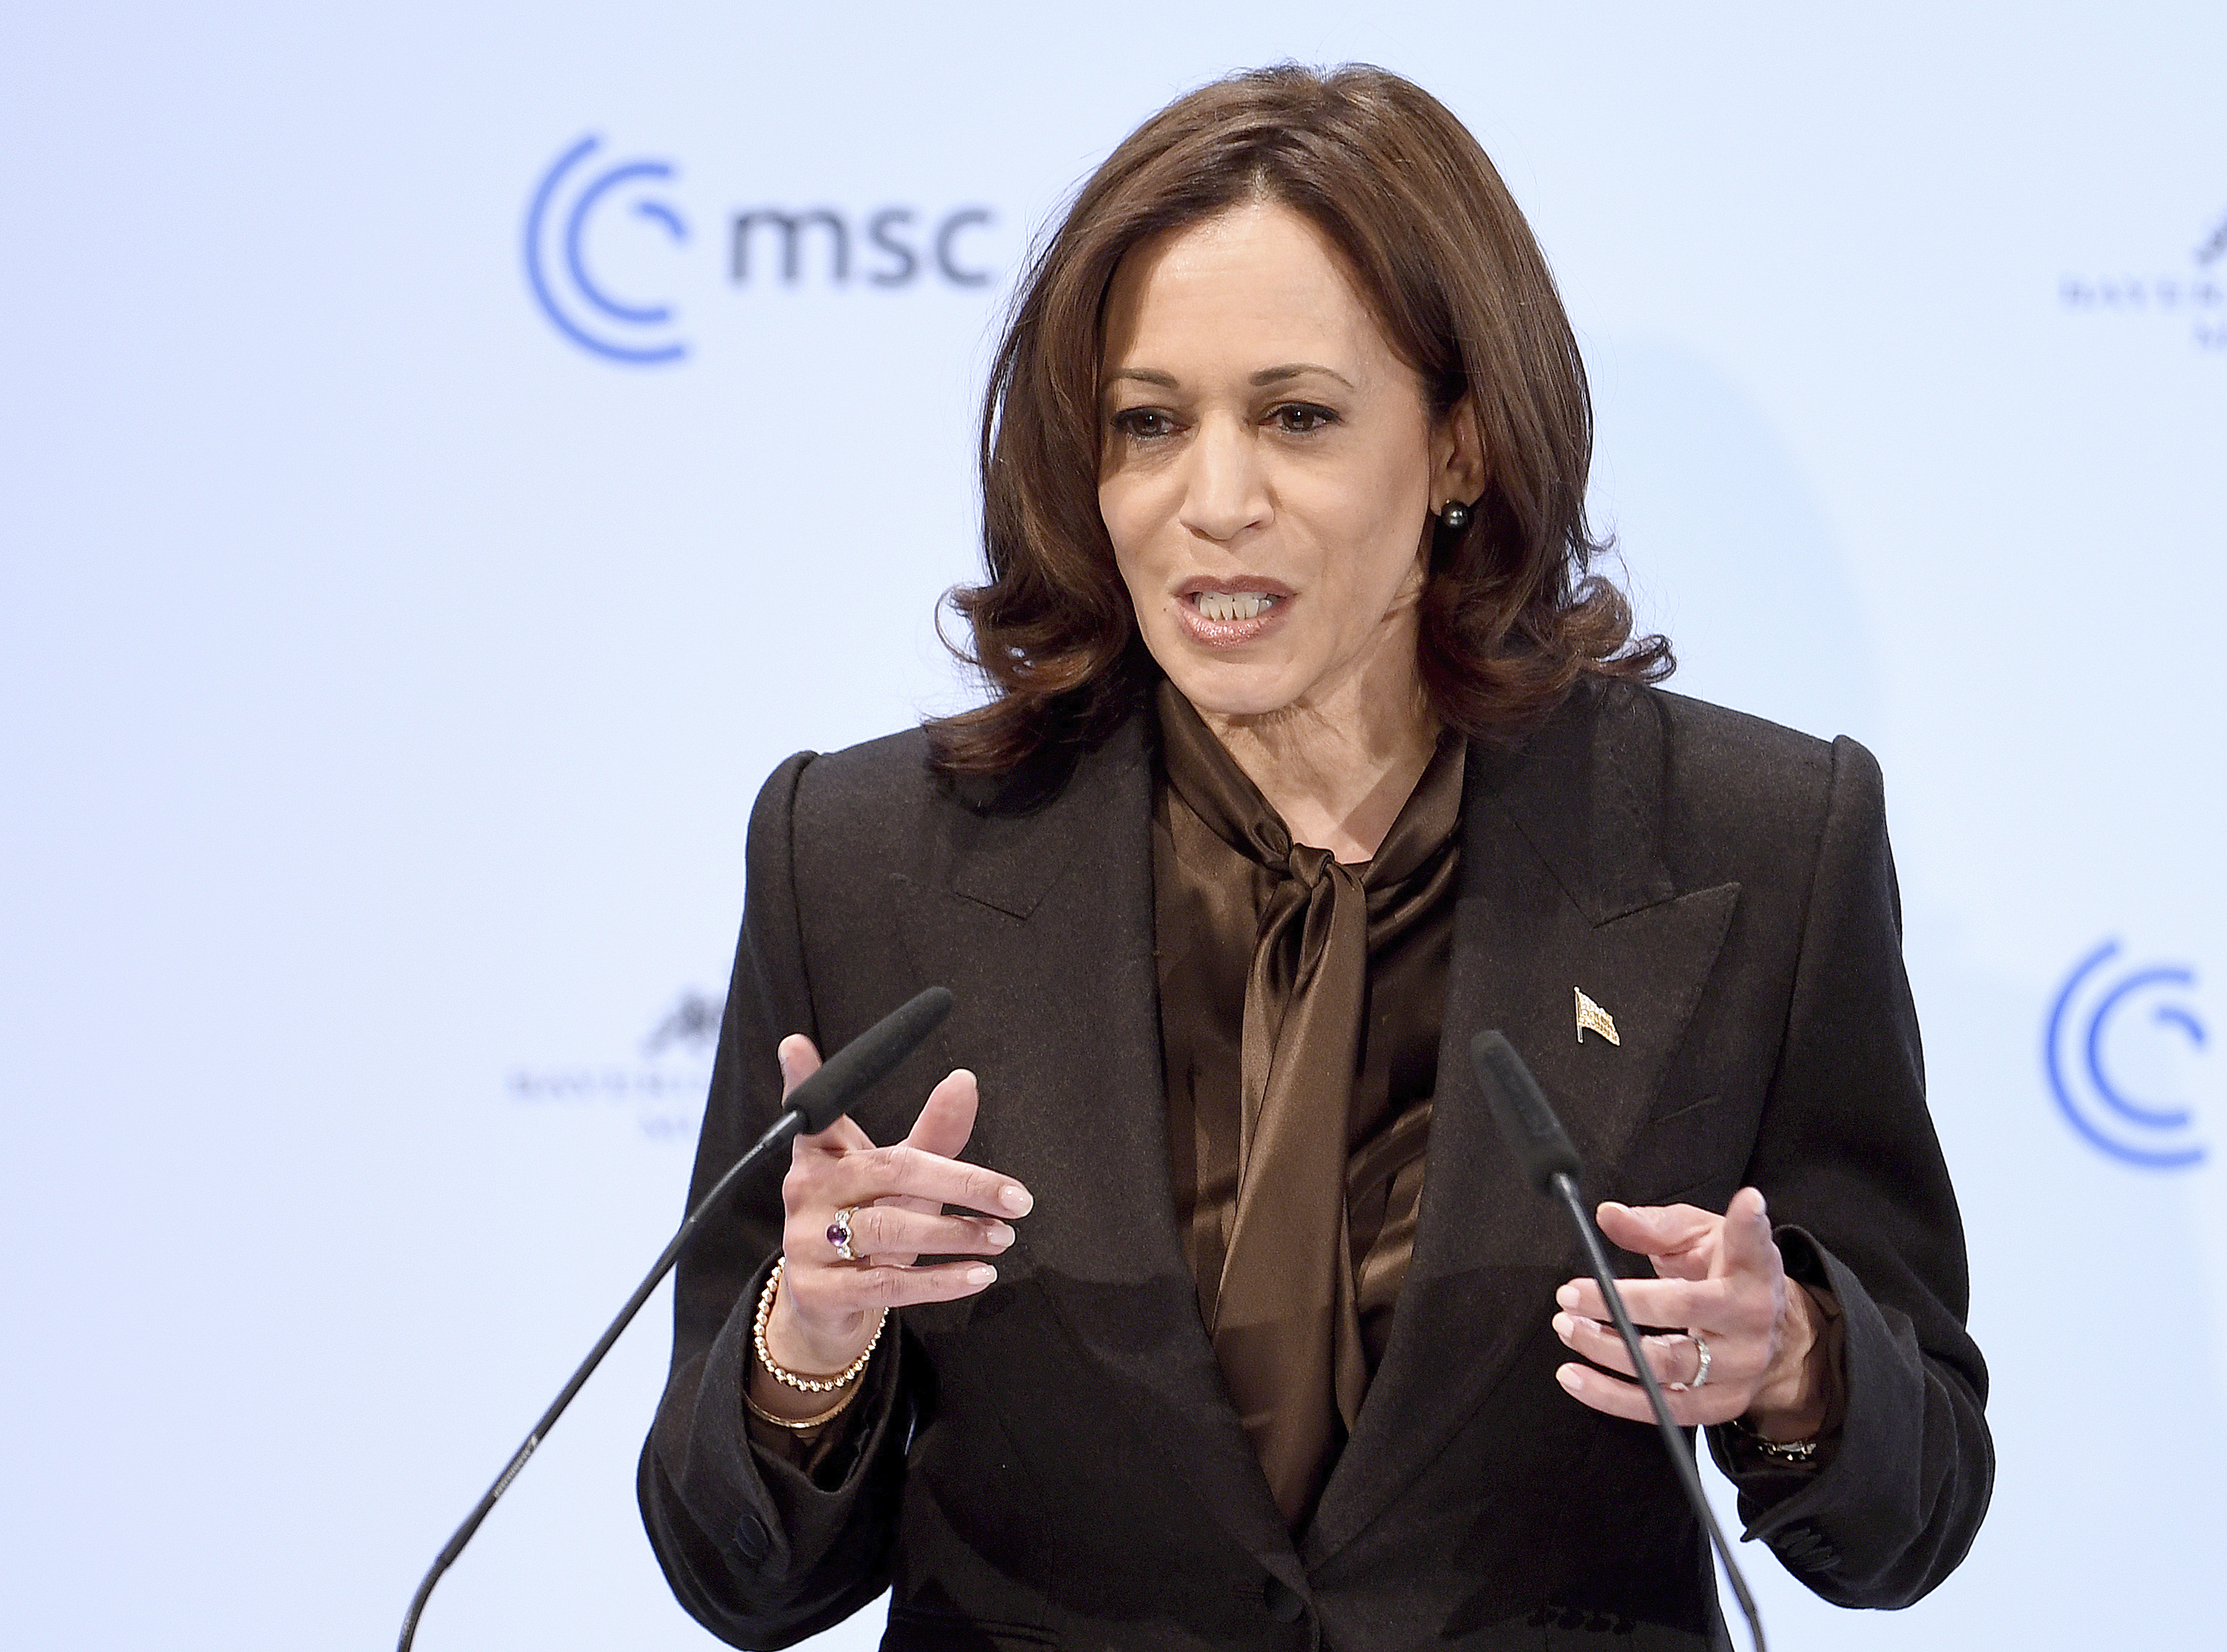 La vicepresidenta de Estados Unidos, Kamala Harris, habla durante la Conferencia de Seguridad de Múnich